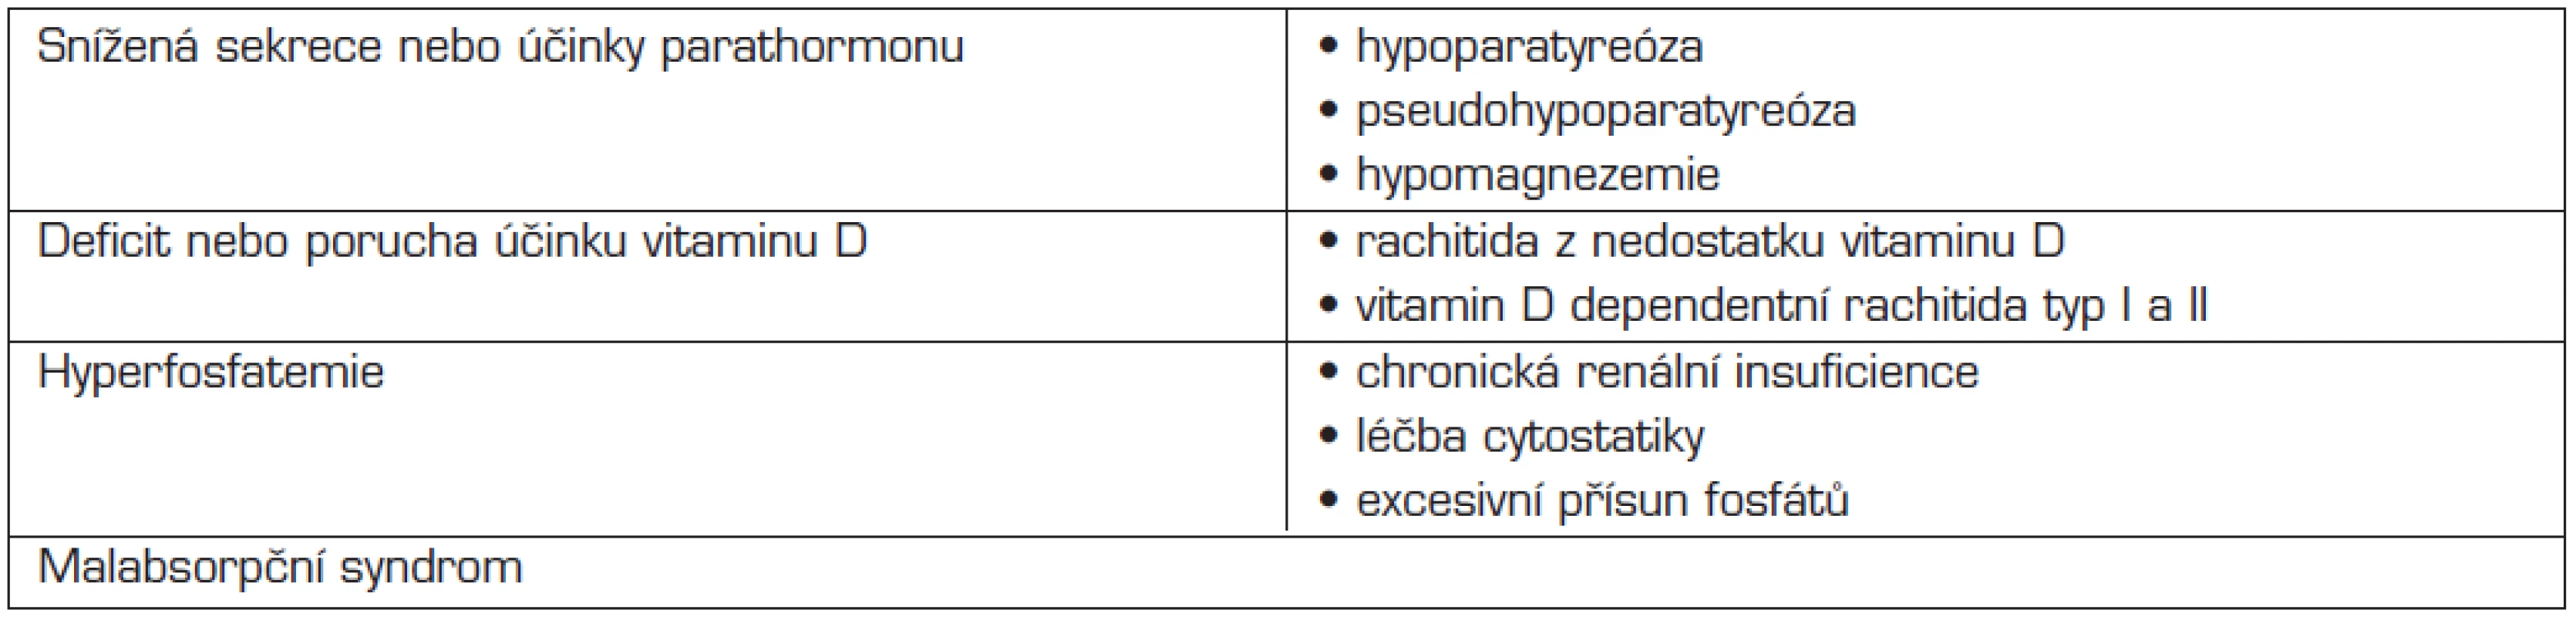 Diferenciální diagnostika hypokalcemie u dětí.